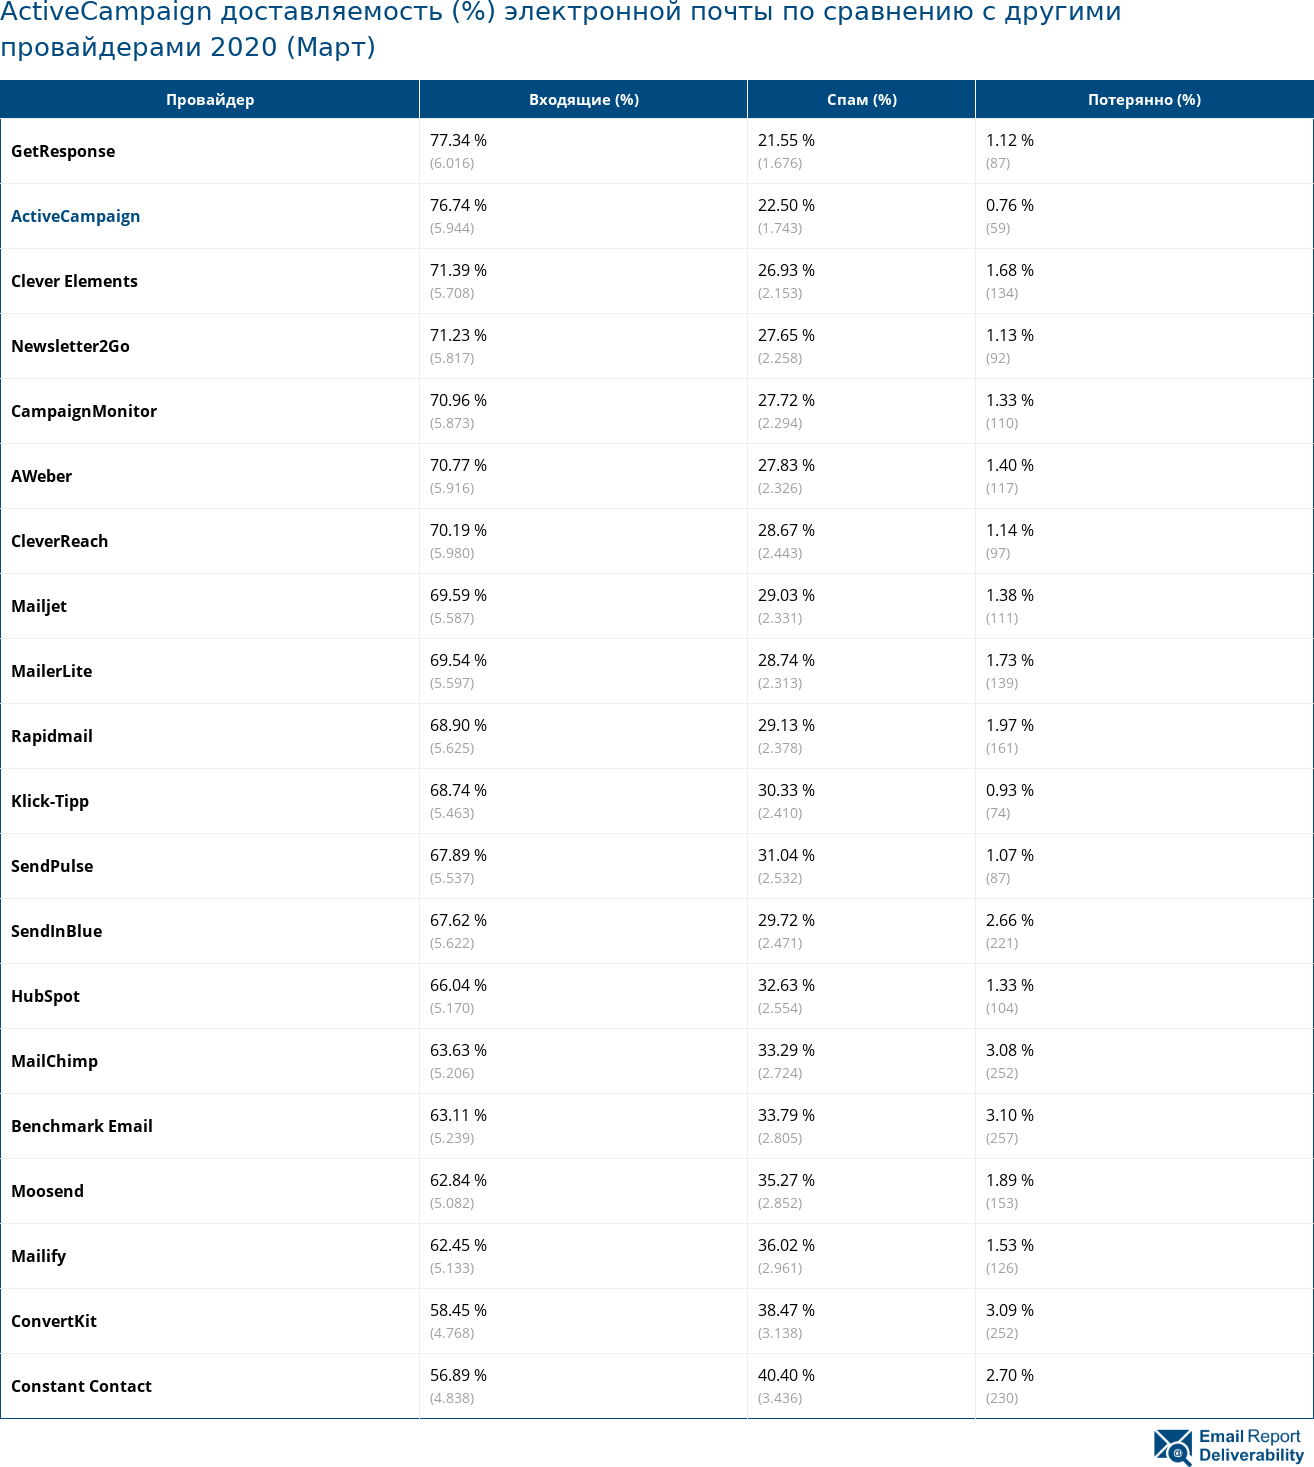 ActiveCampaign доставляемость (%) электронной почты по сравнению с другими провайдерами 2020 (Март)